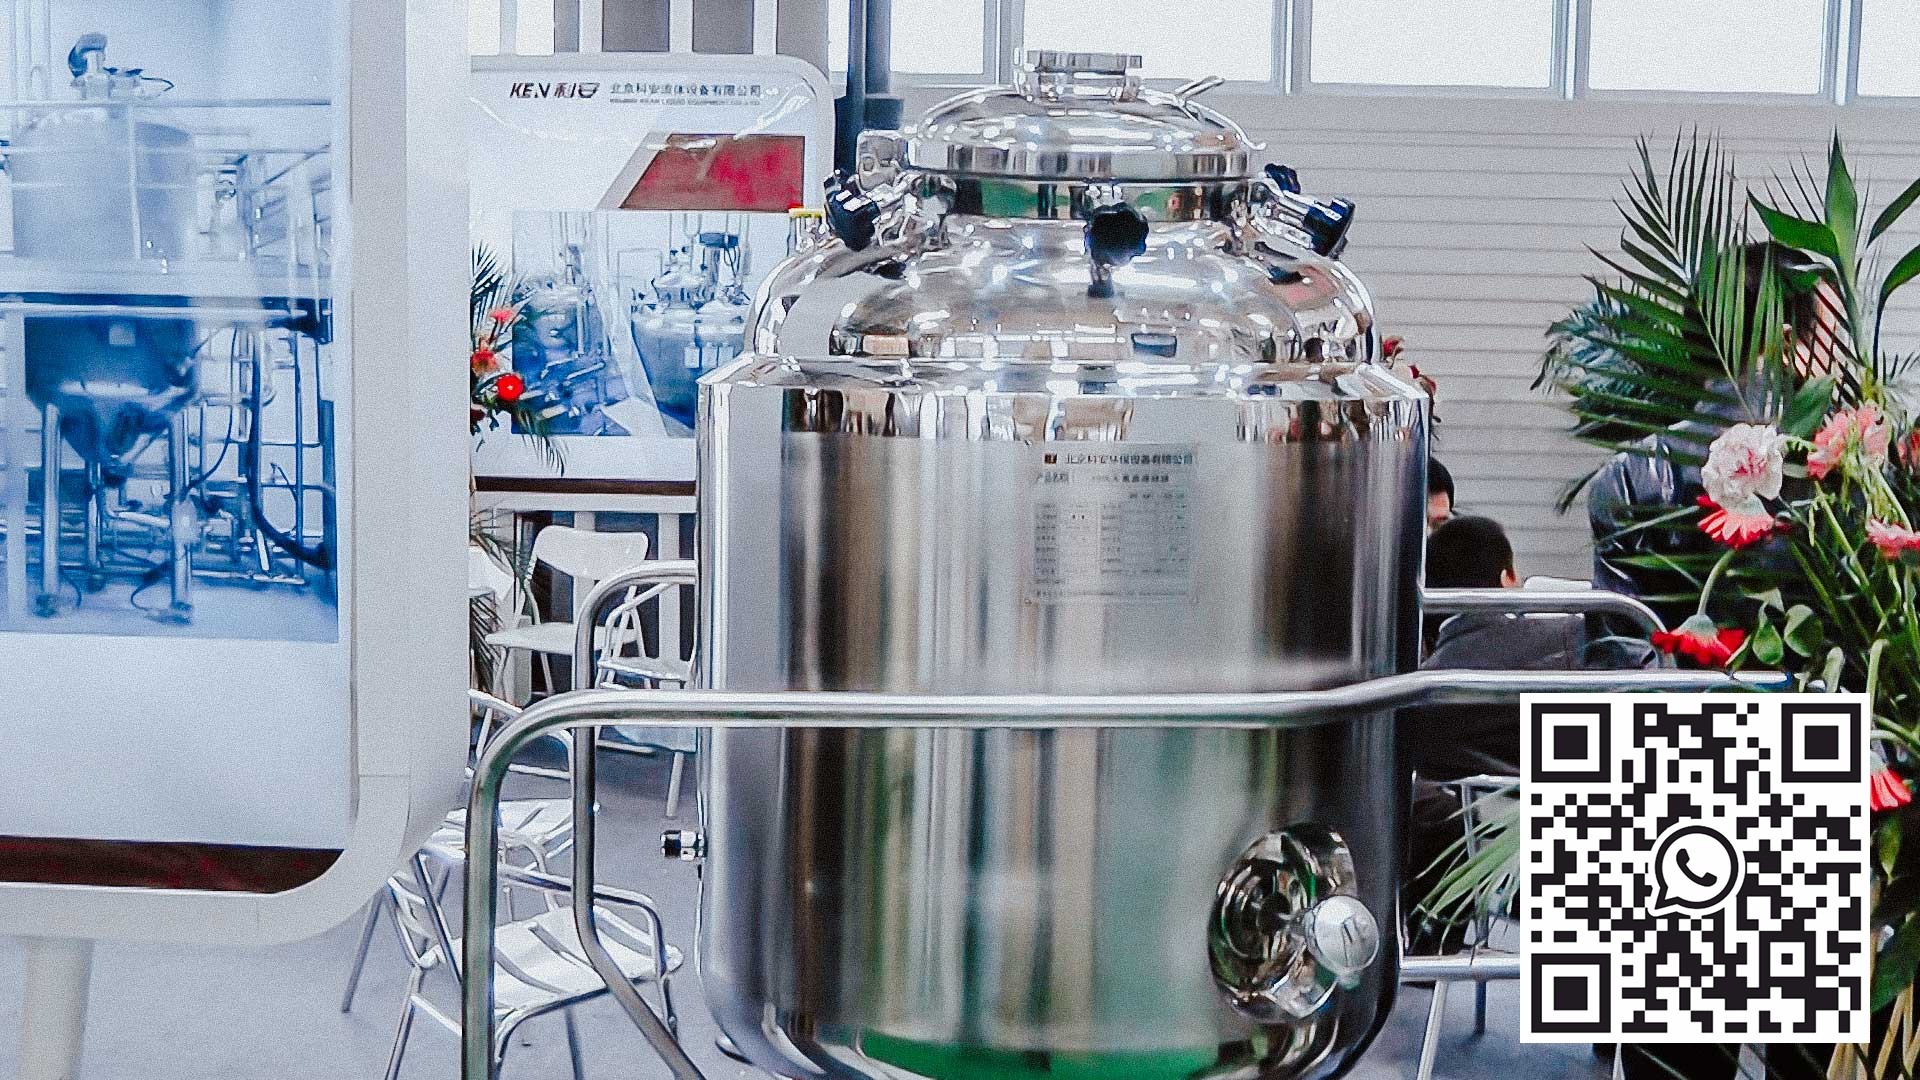 300 litrowy zbiornik do przygotowania płynnych produktów farmaceutycznych